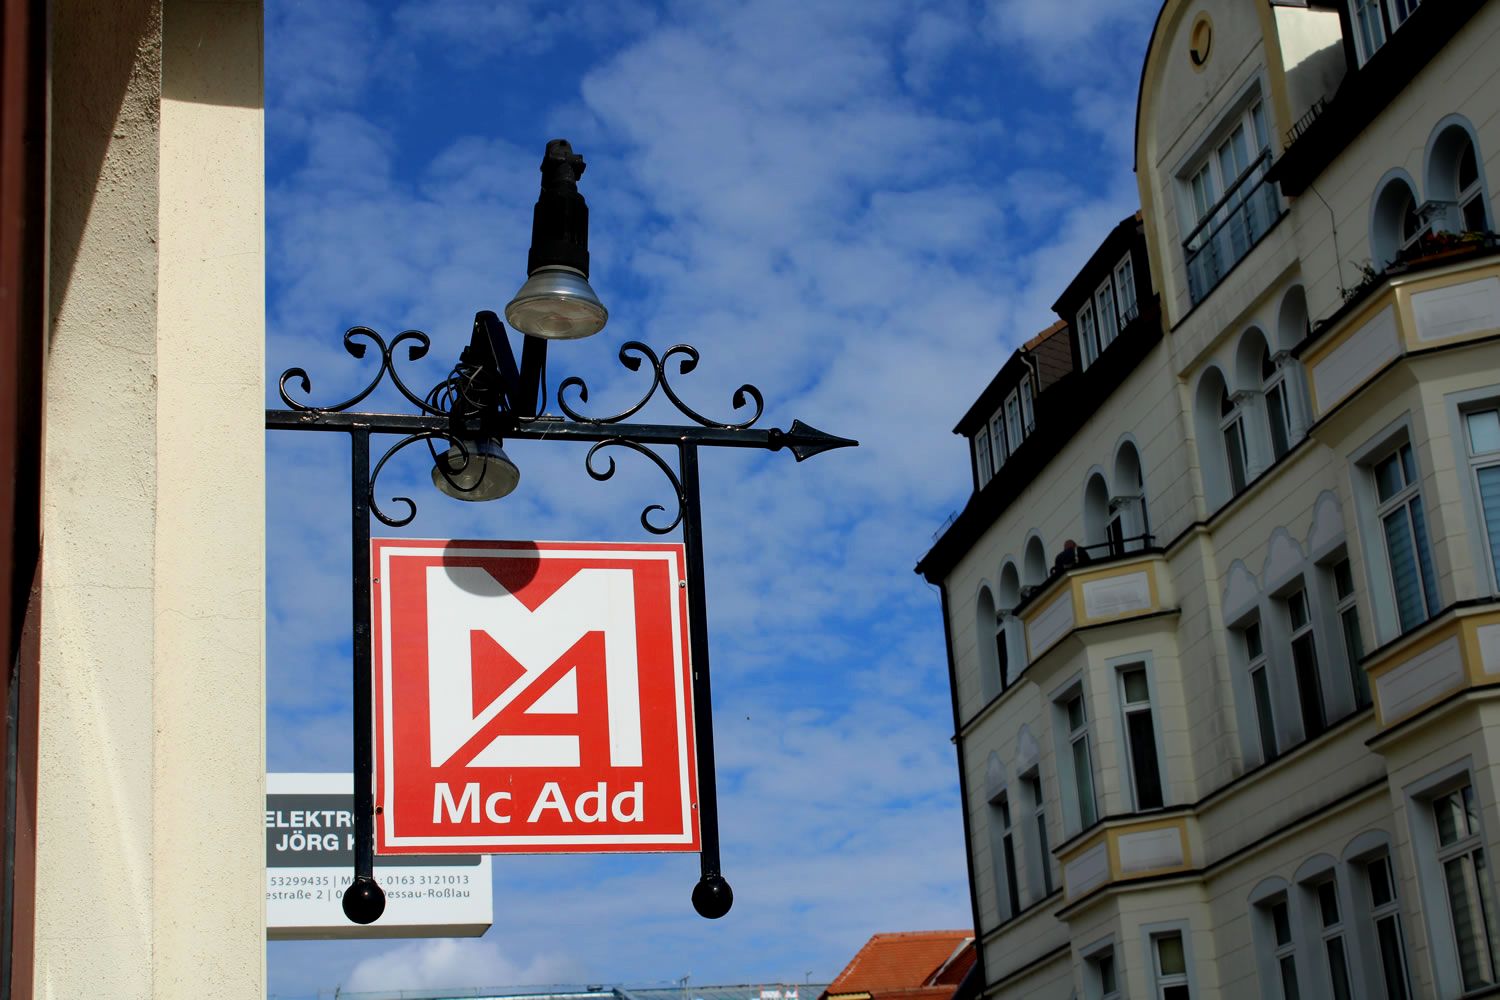 Mc Add - Internet- & Werbeagentur